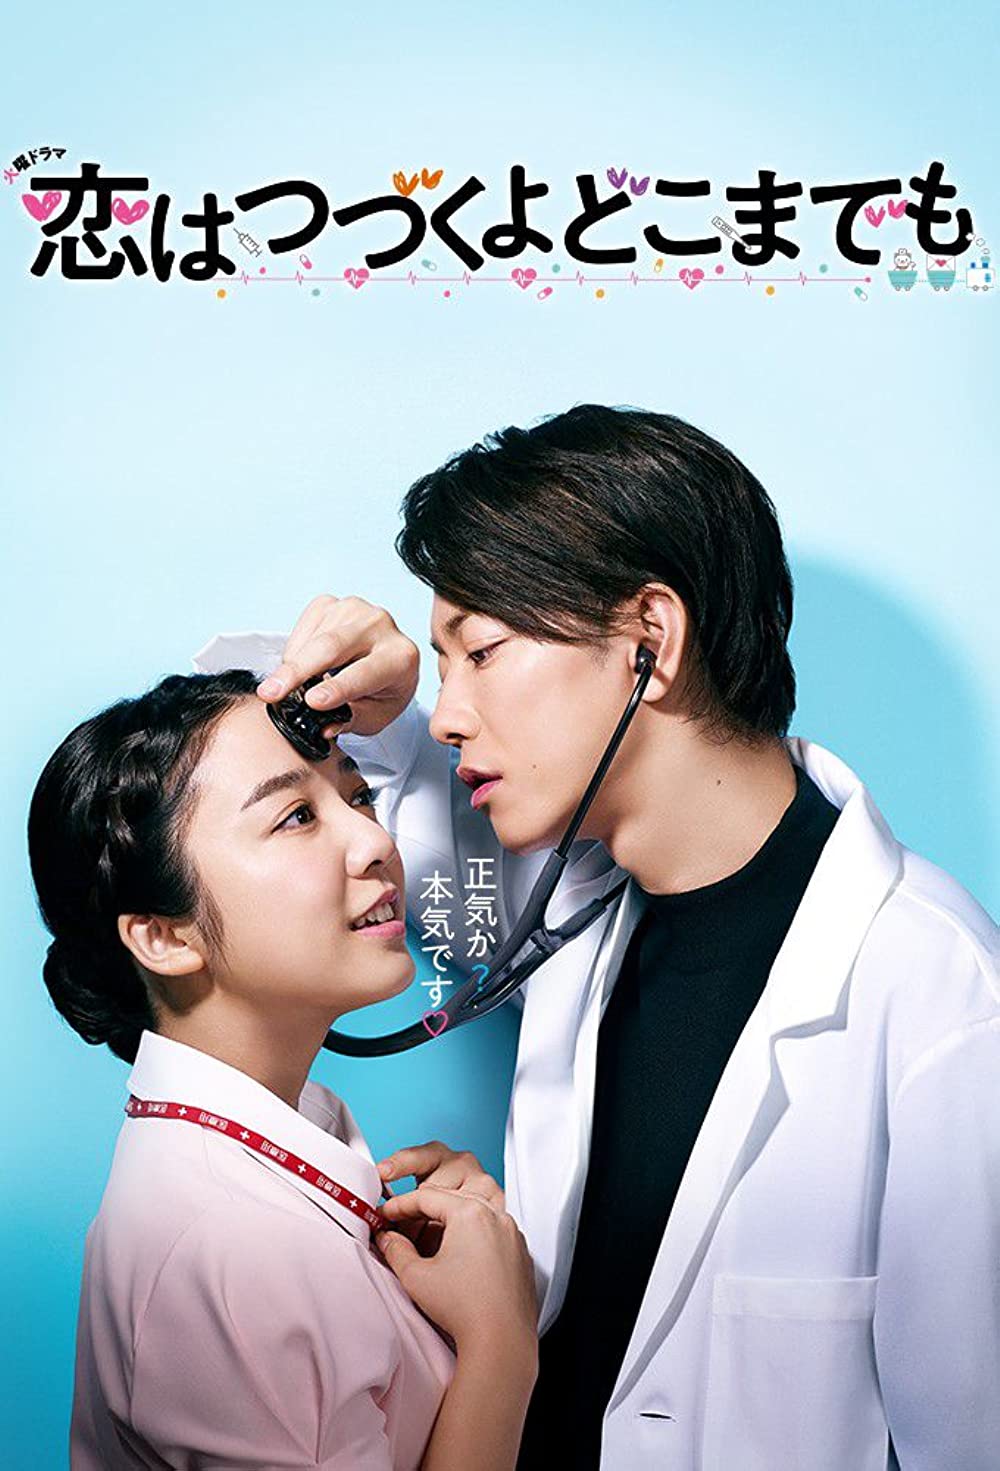 ดูหนังออนไลน์ฟรี ซีรี่ส์ญี่ปุ่น  An Incurable Case of Love (2020) คุณหมอขาโหดกับพยาบาลโขดหิน ซับไทย